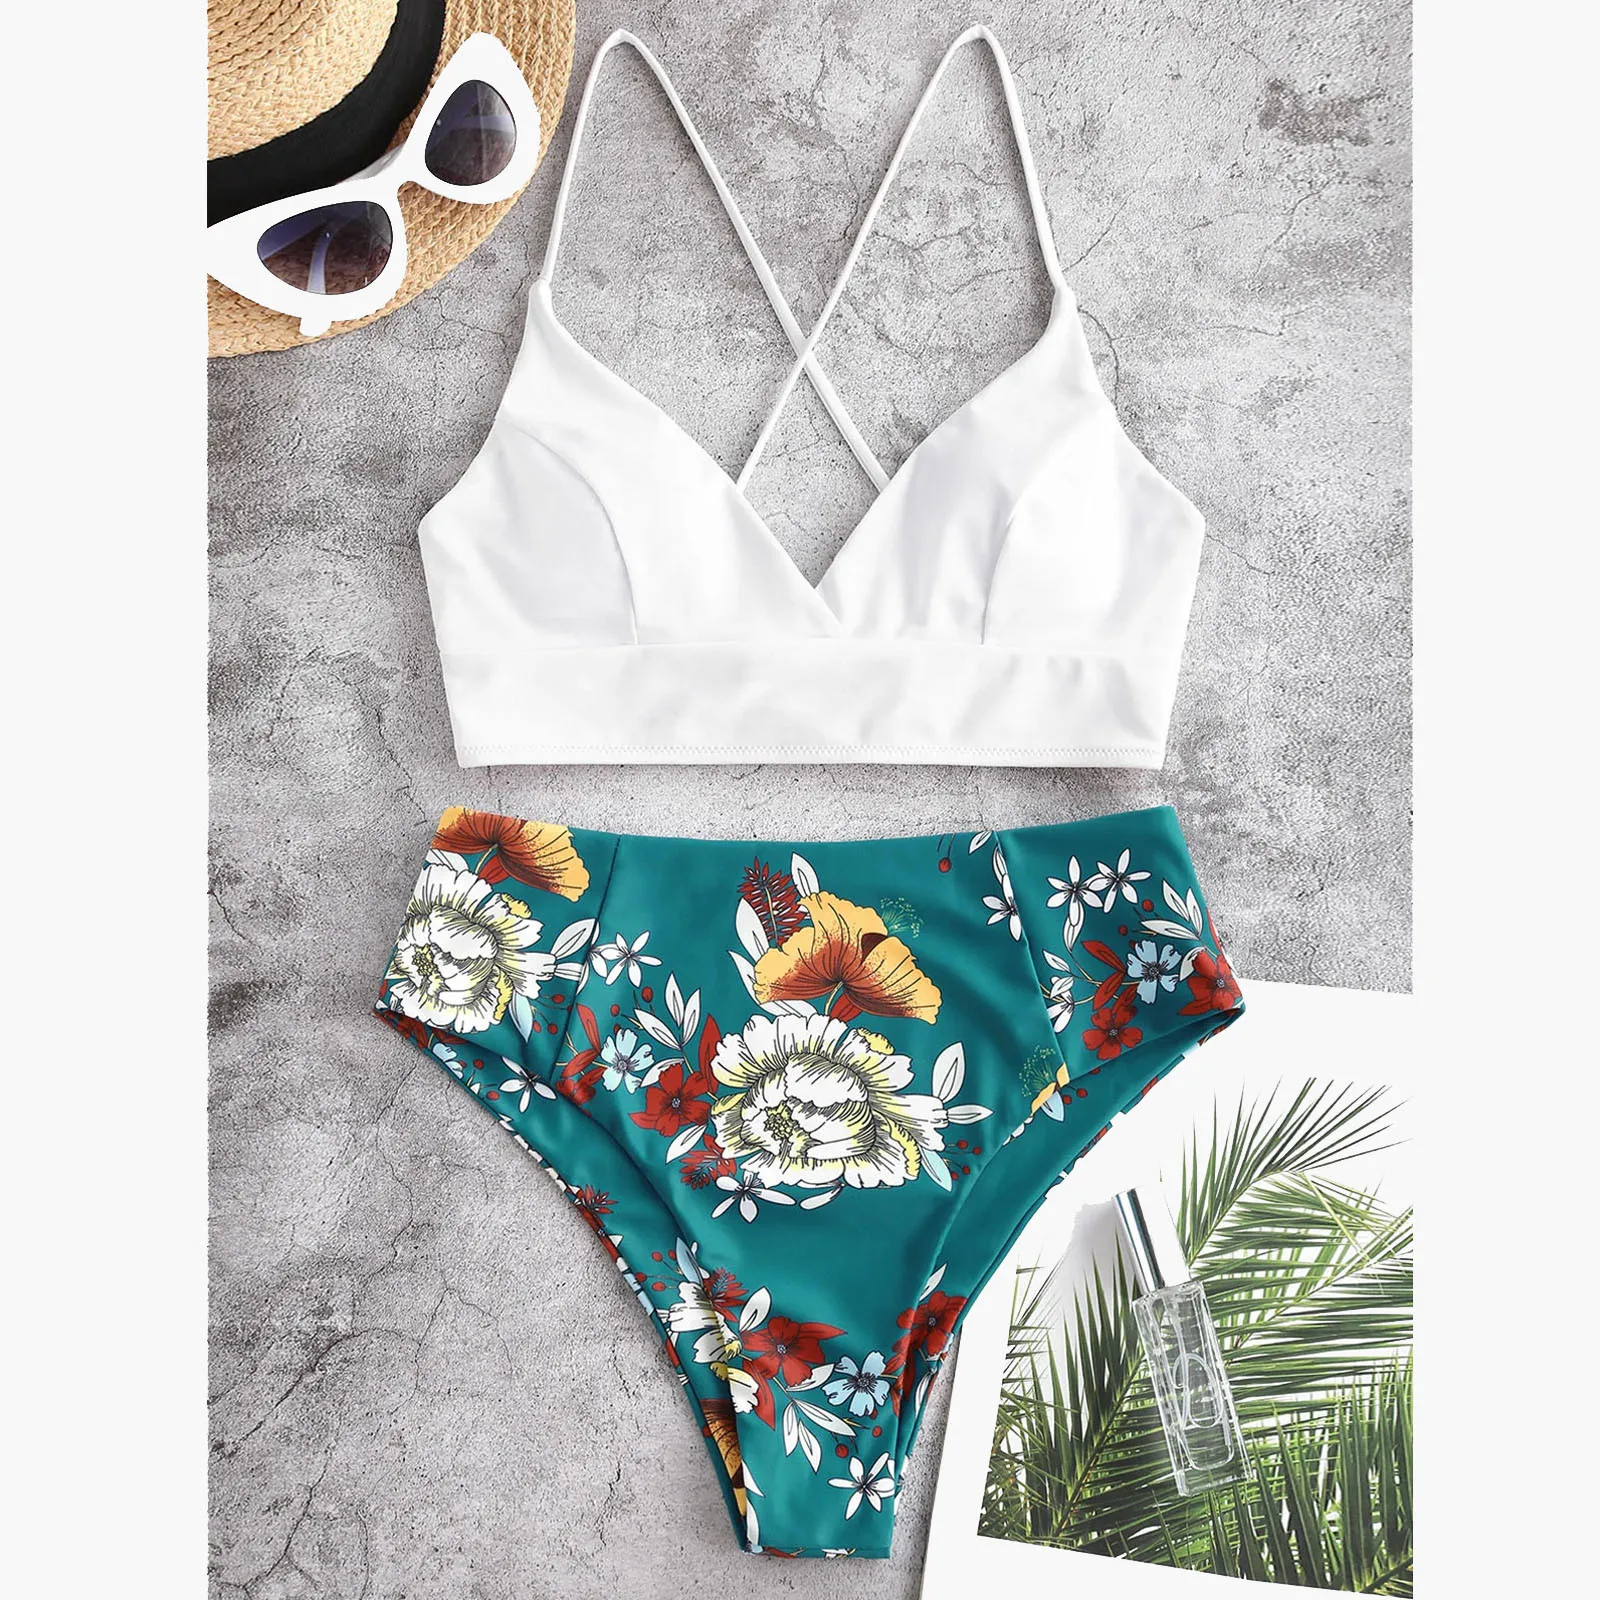 Two Piece Swimsuit Women Flower Print Split Sets Plus Size Beachwear Swimsuit Bikini Swimsuits For Teen Girls Sport Bachwear images - 6